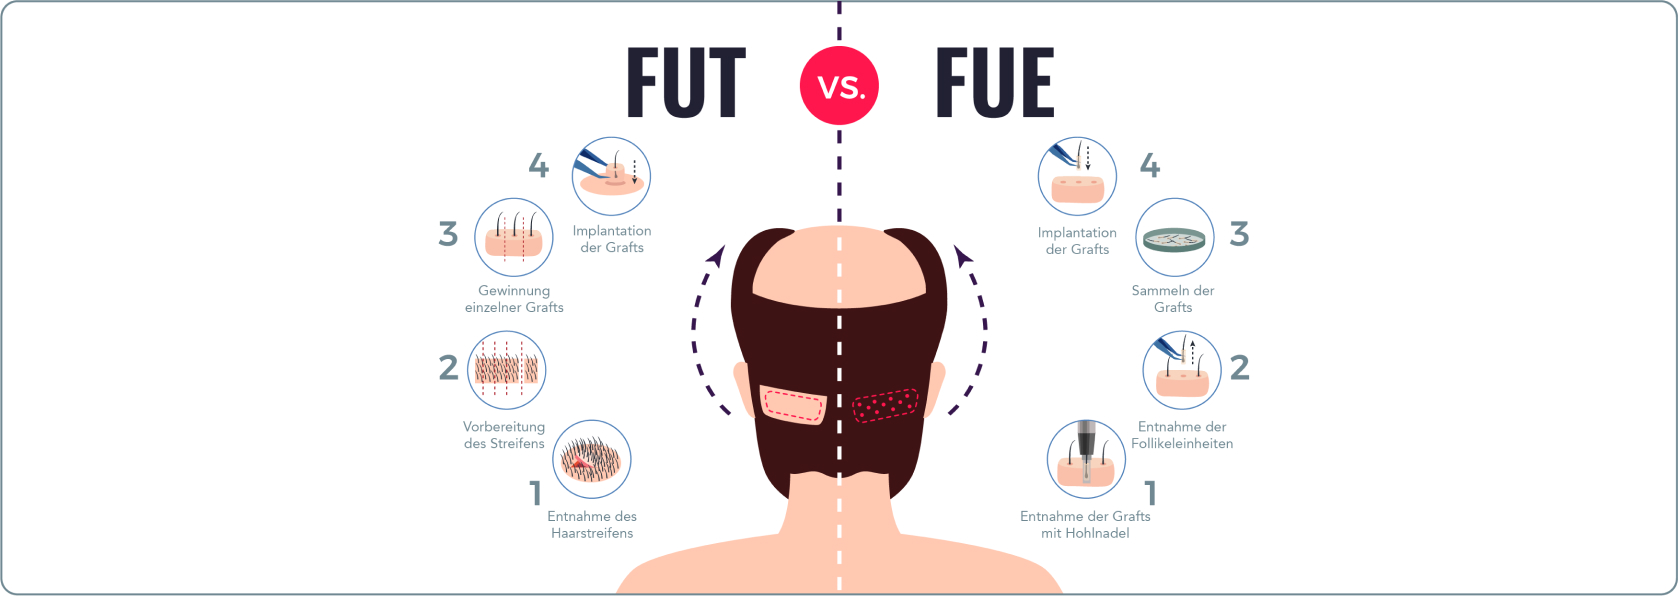 Haartransplantation - Was passiert bei einer Haartransplantation mit der FUE-Methode?